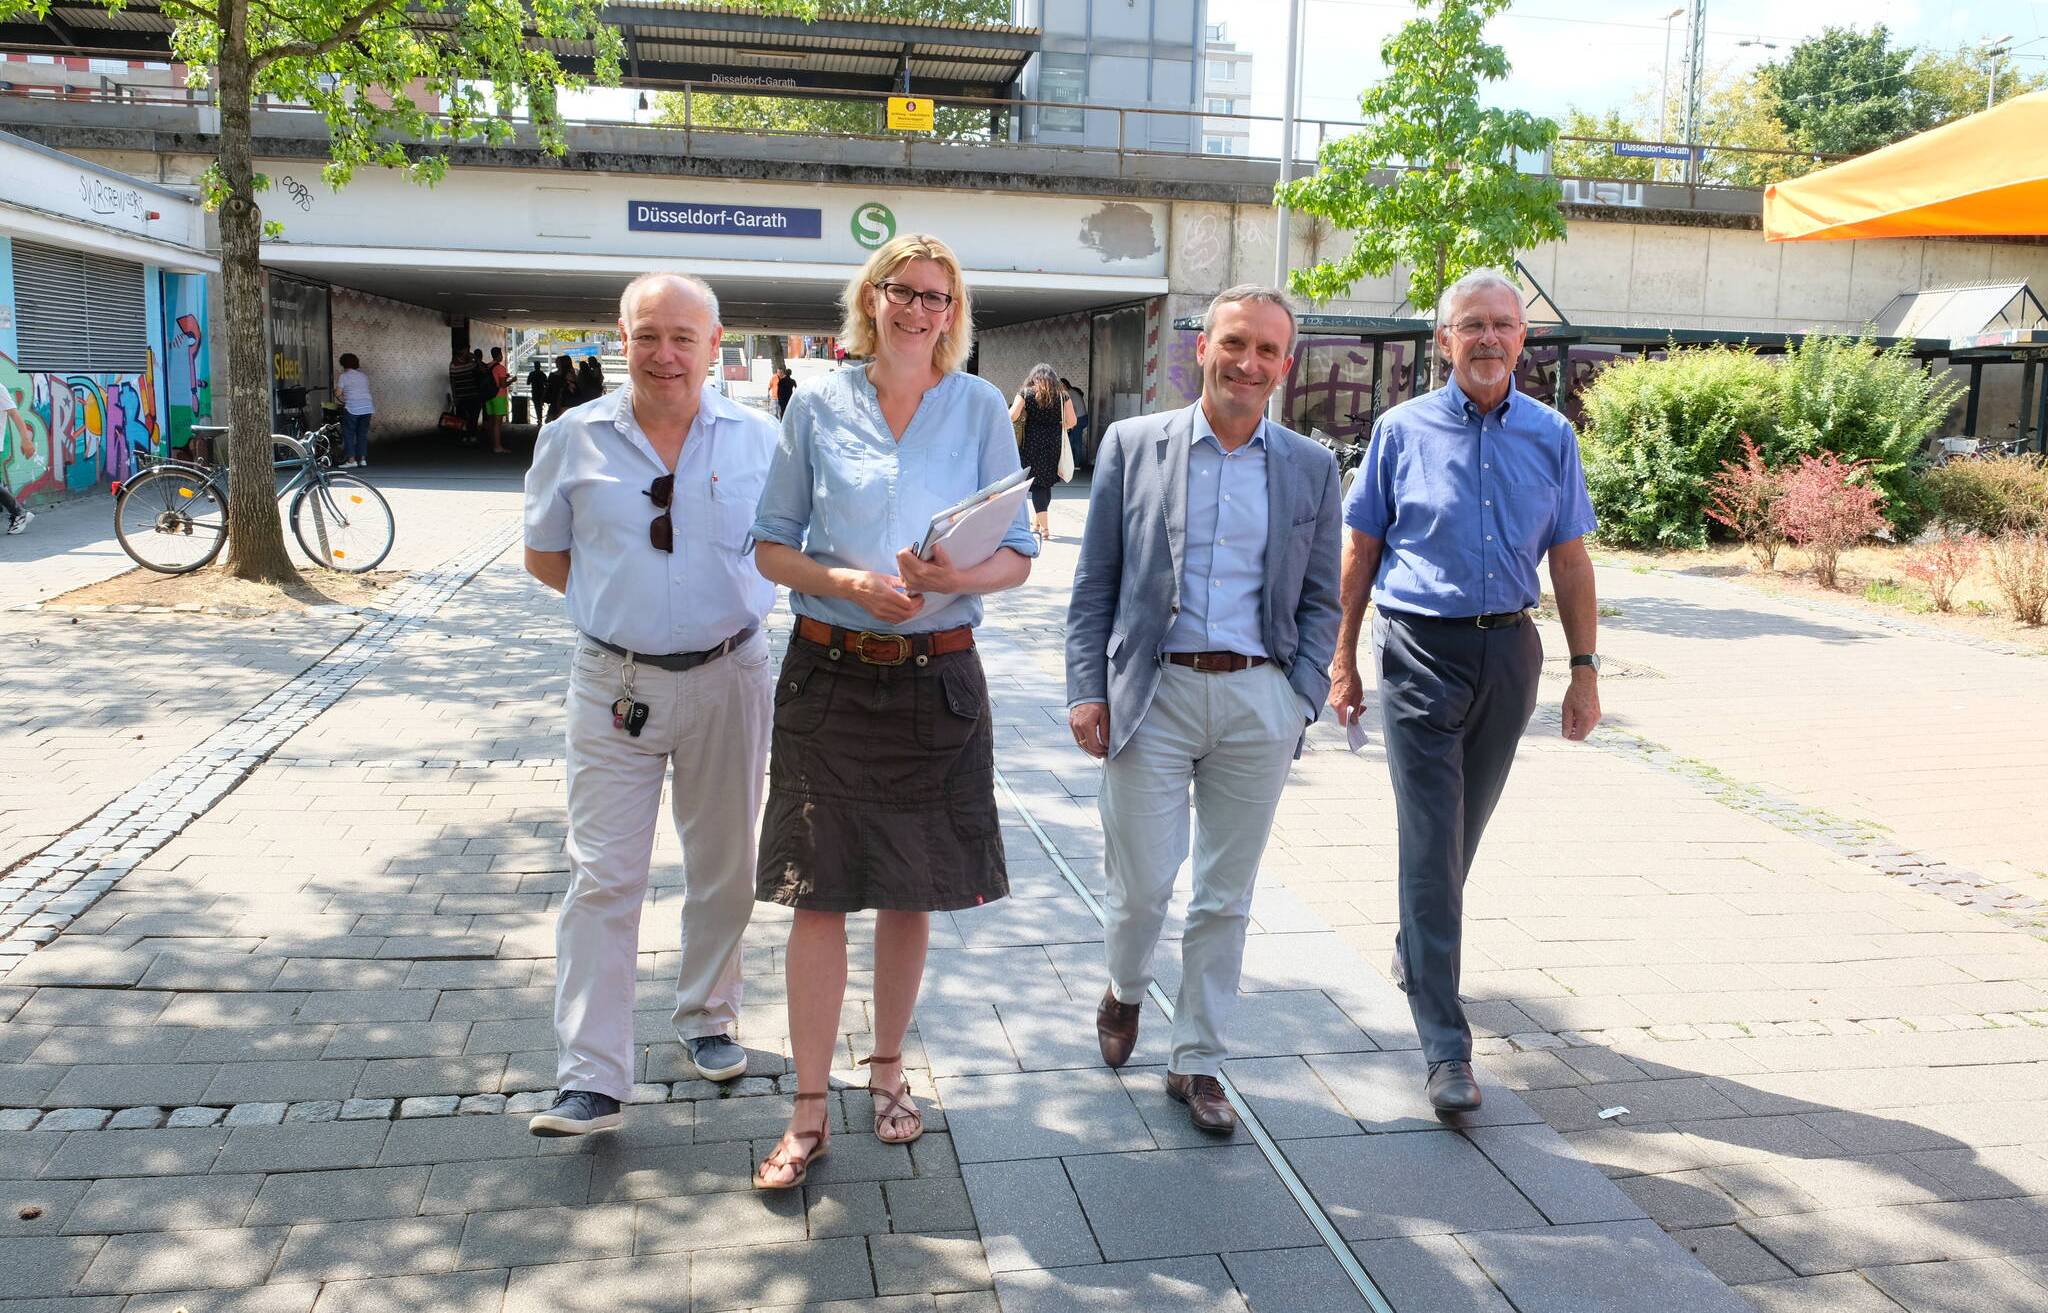  Quartiersmanagerin Silke de Roode, Bezirksbürgermeister Uwe Sievers (r.) und Ratsherr und BV-Mitglied Jürgen Bohrmann (l.) führten OB Thomas Geisel durch Garath. 